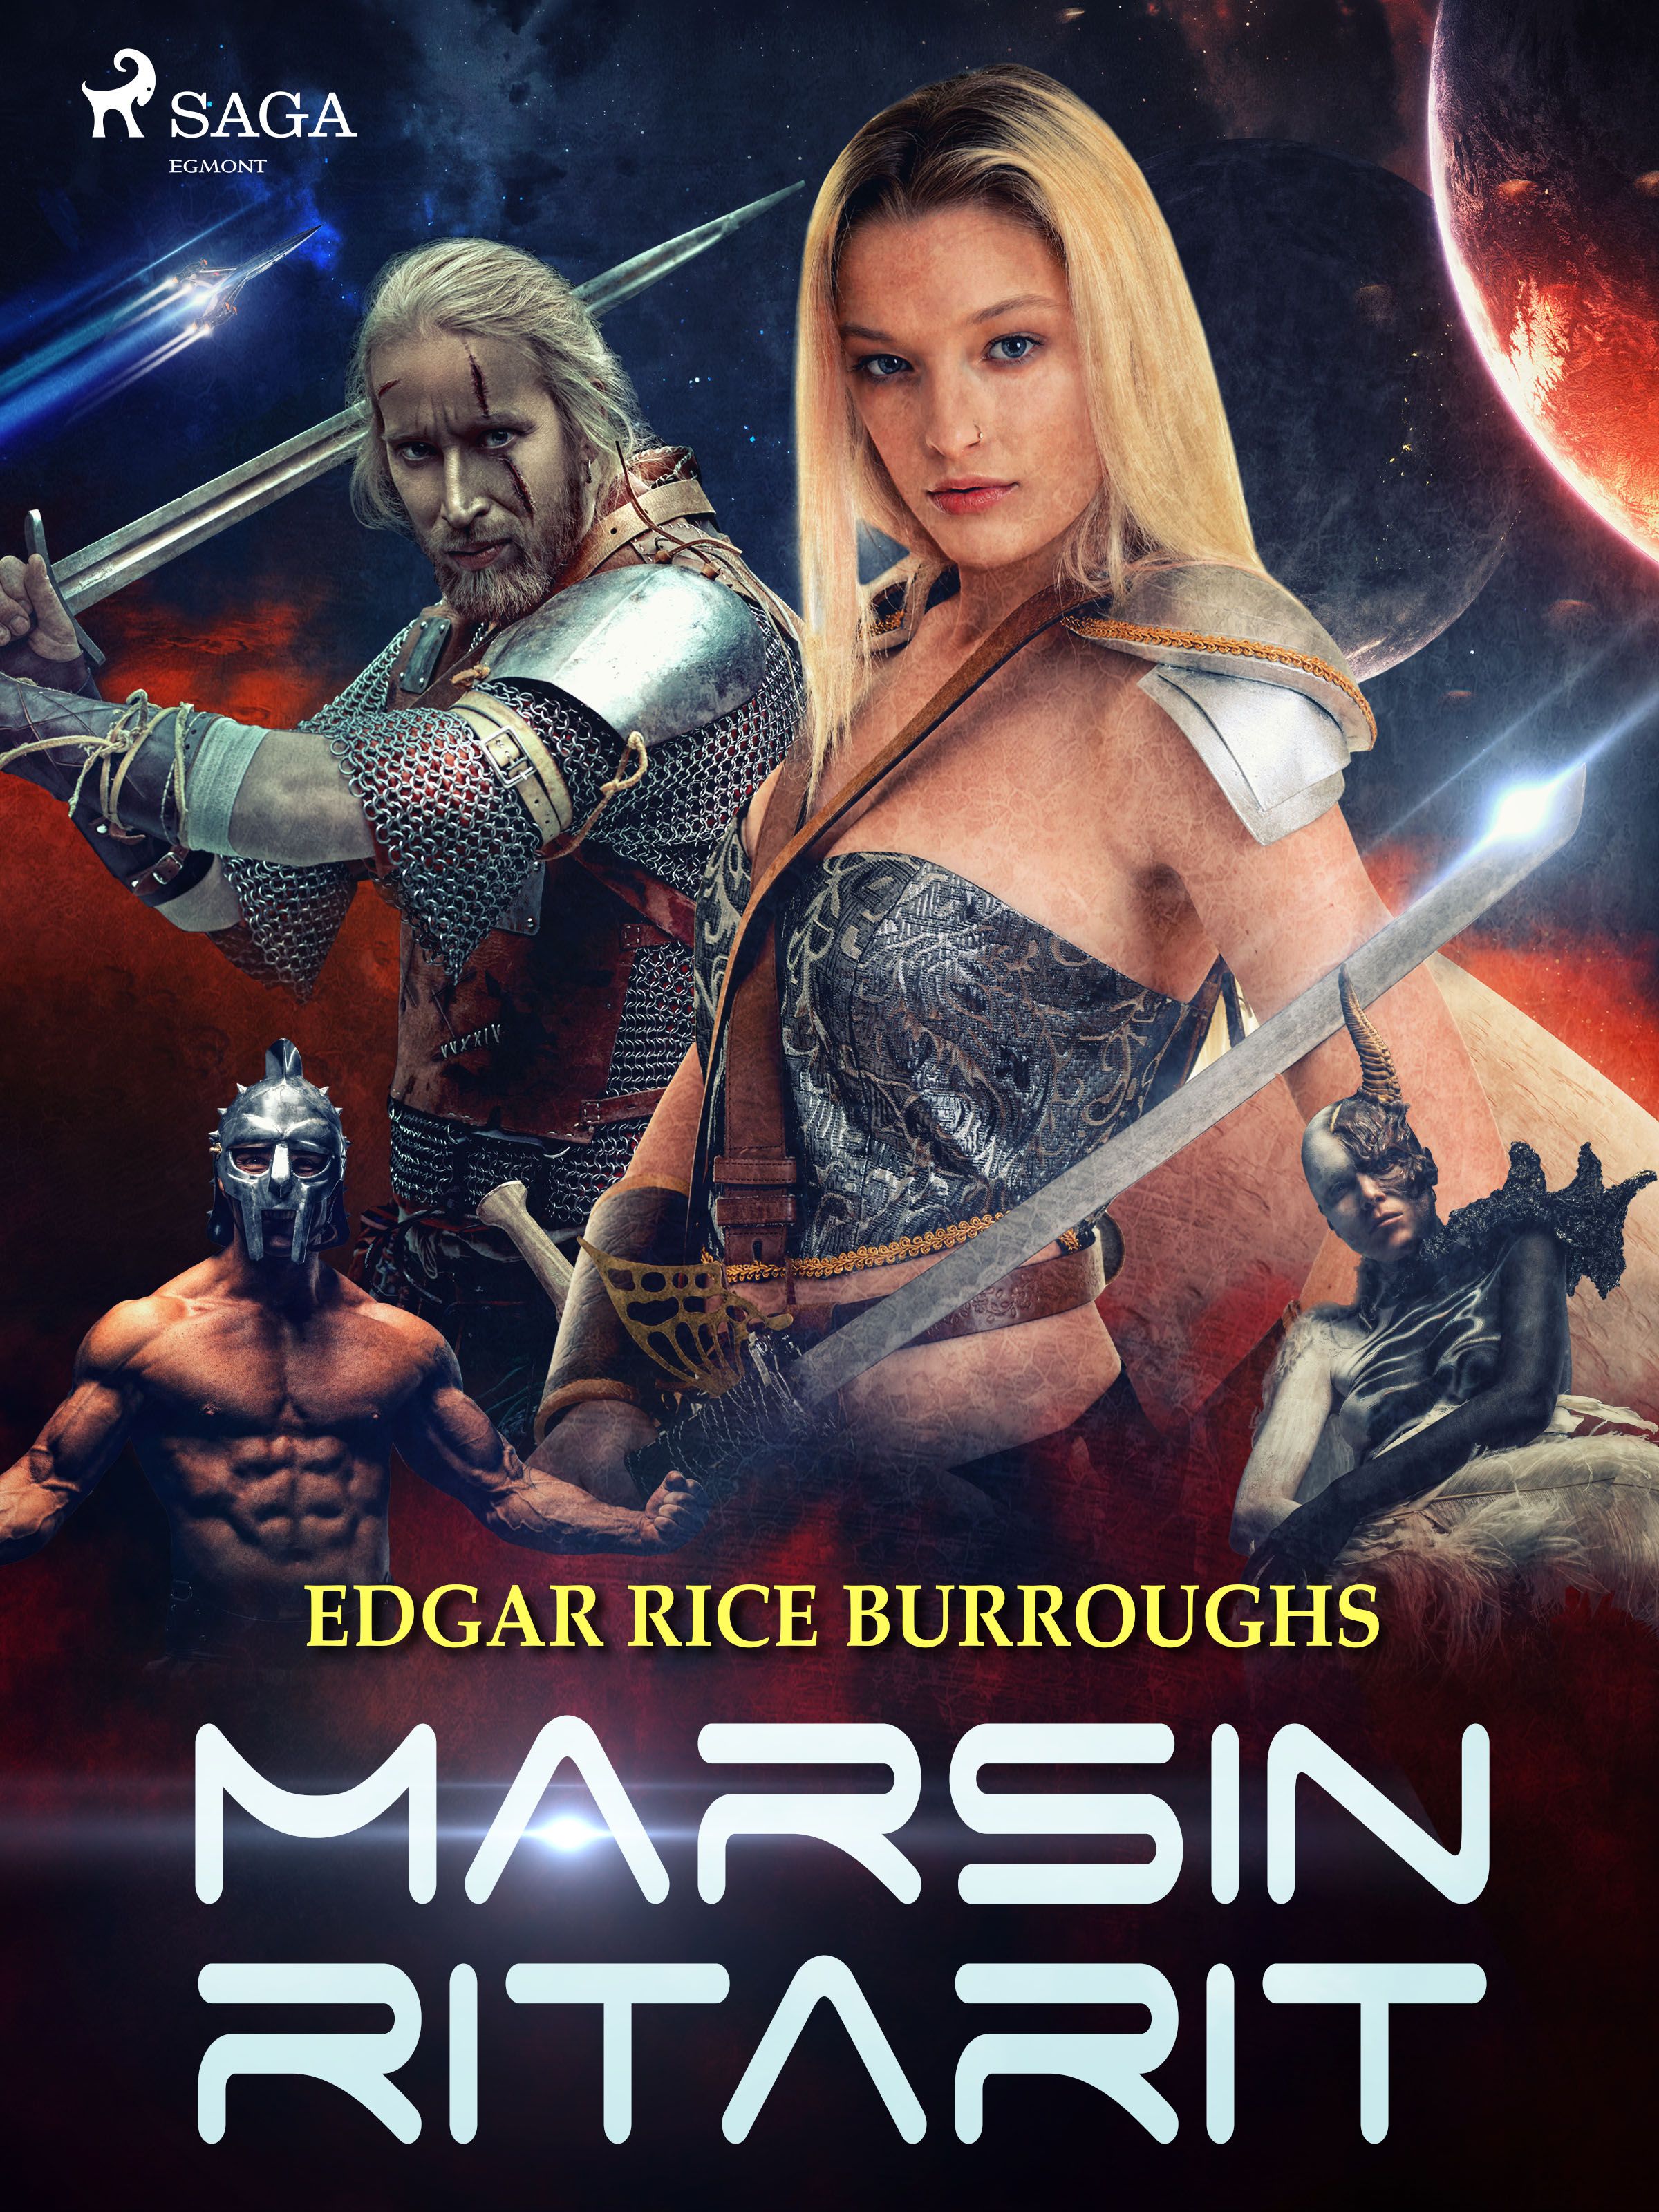 Marsin ritarit, e-bog af Edgar Rice Burroughs